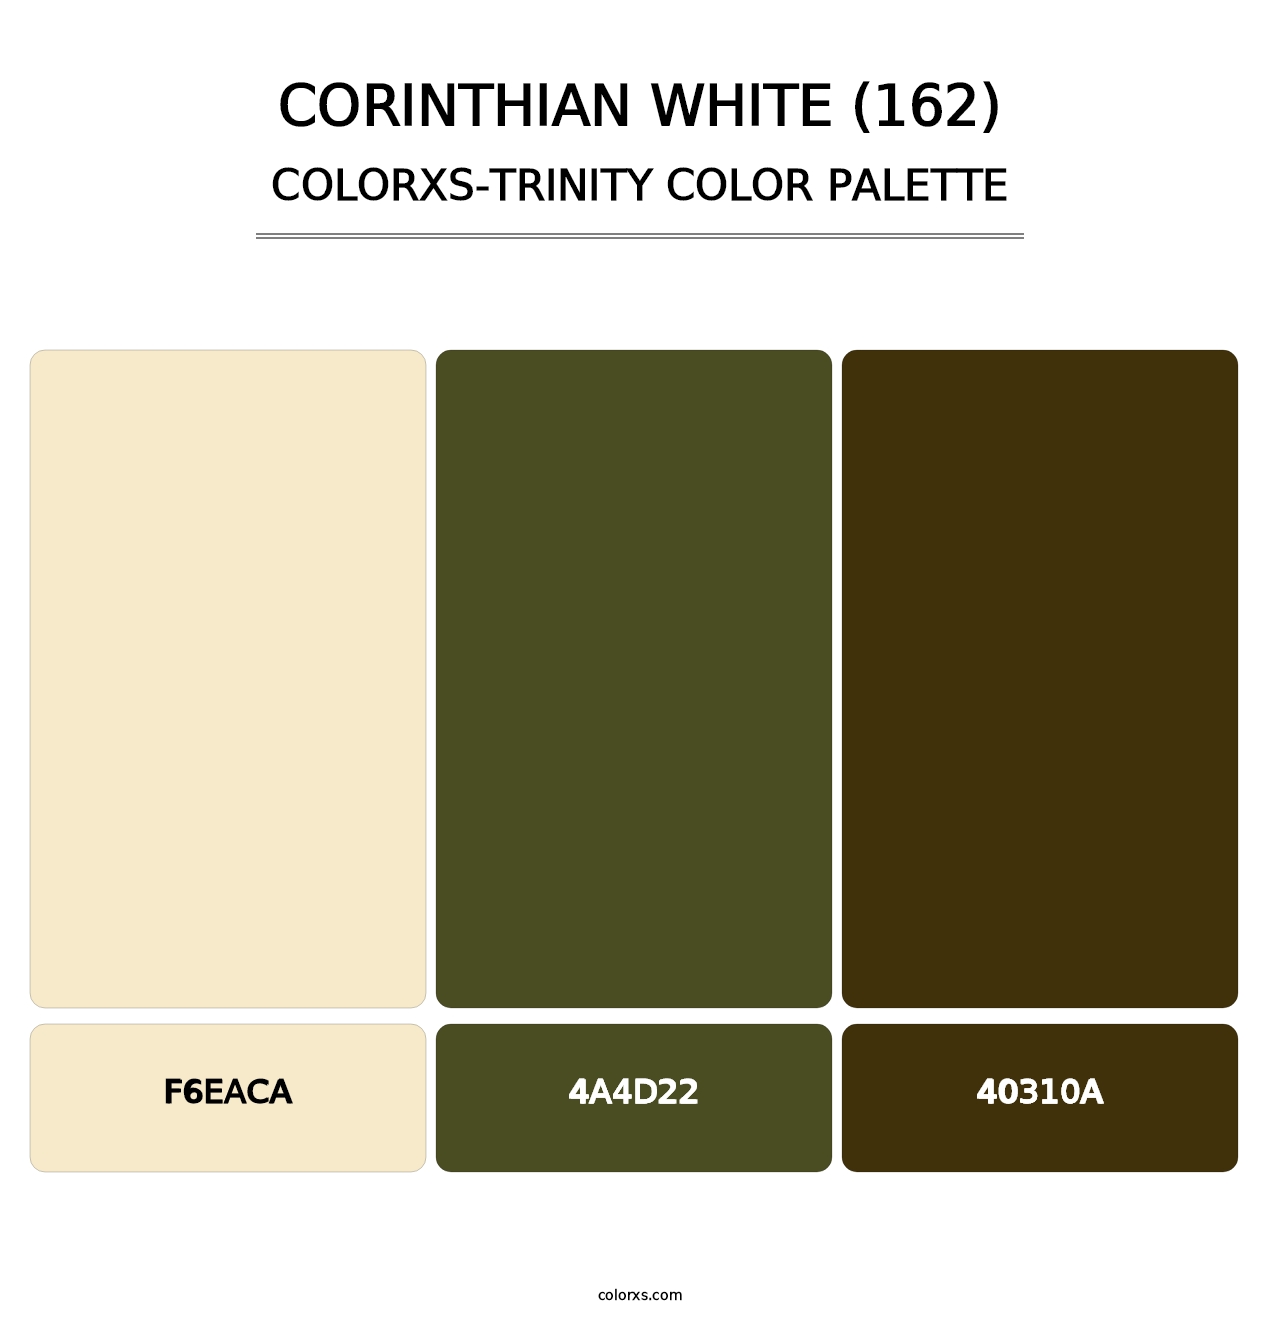 Corinthian White (162) - Colorxs Trinity Palette